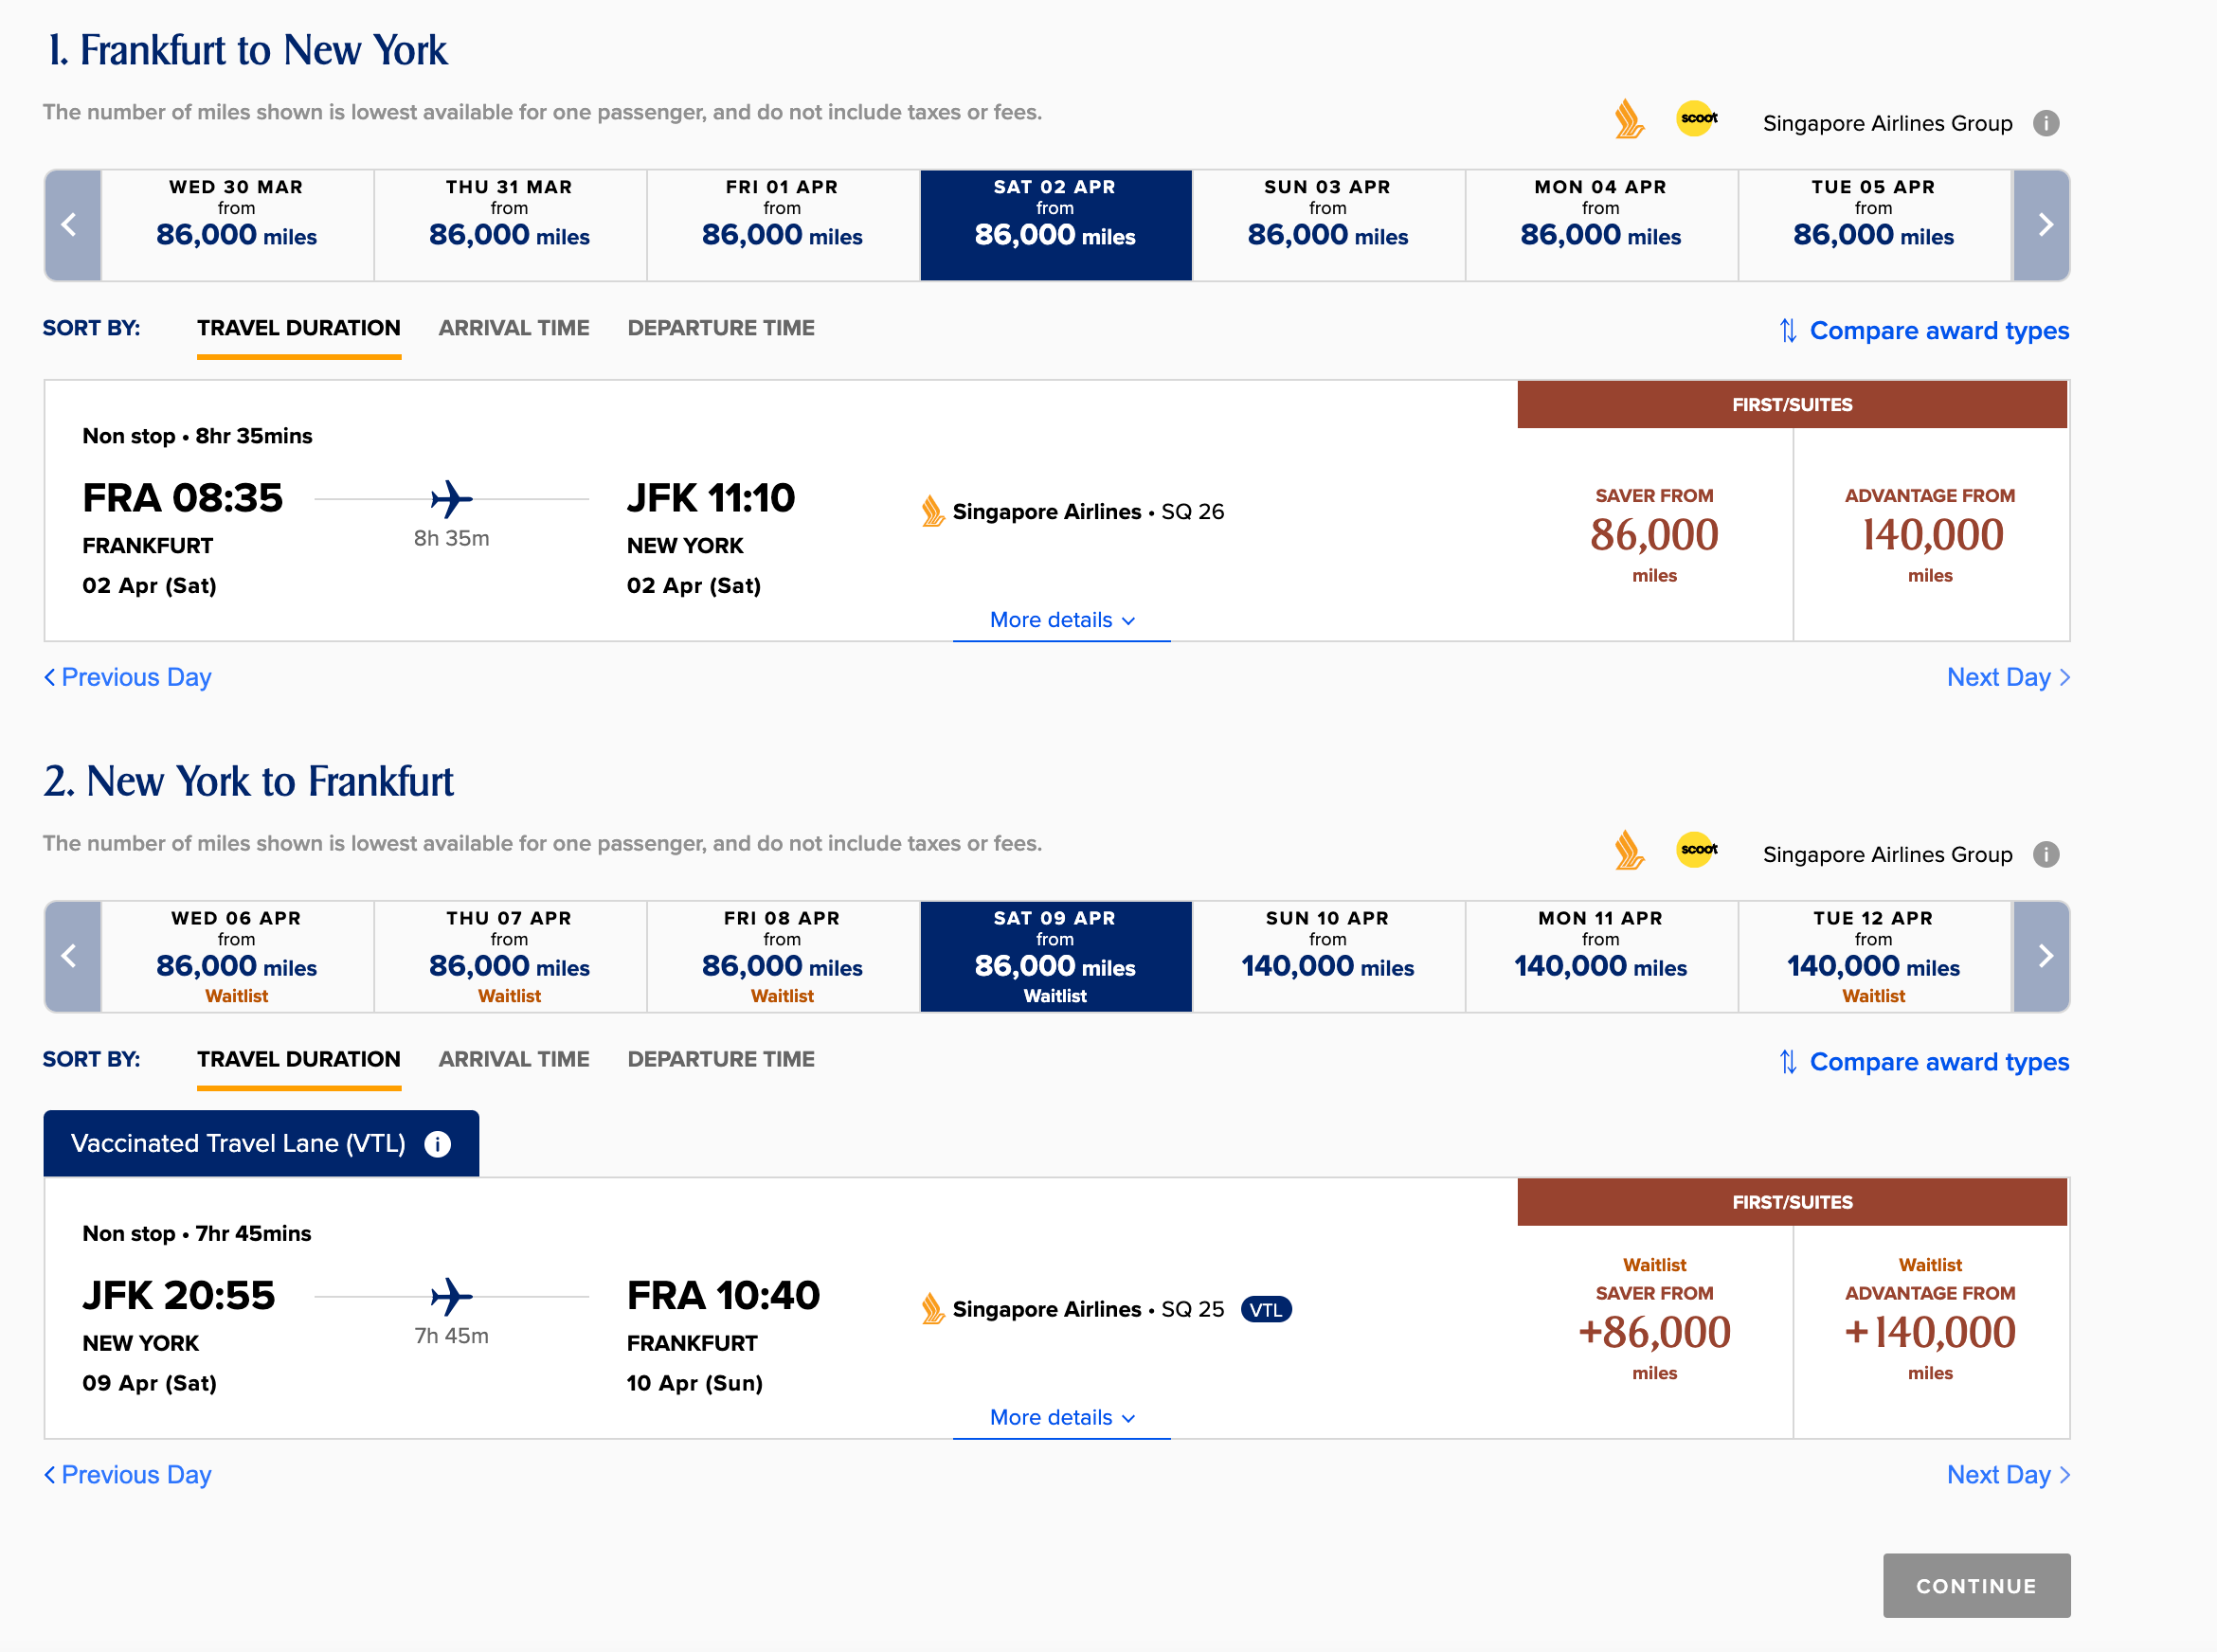  Disponibilidad de premios entre Frankfurt y Nueva York. (Imagen cortesía de Singapore Airlines)